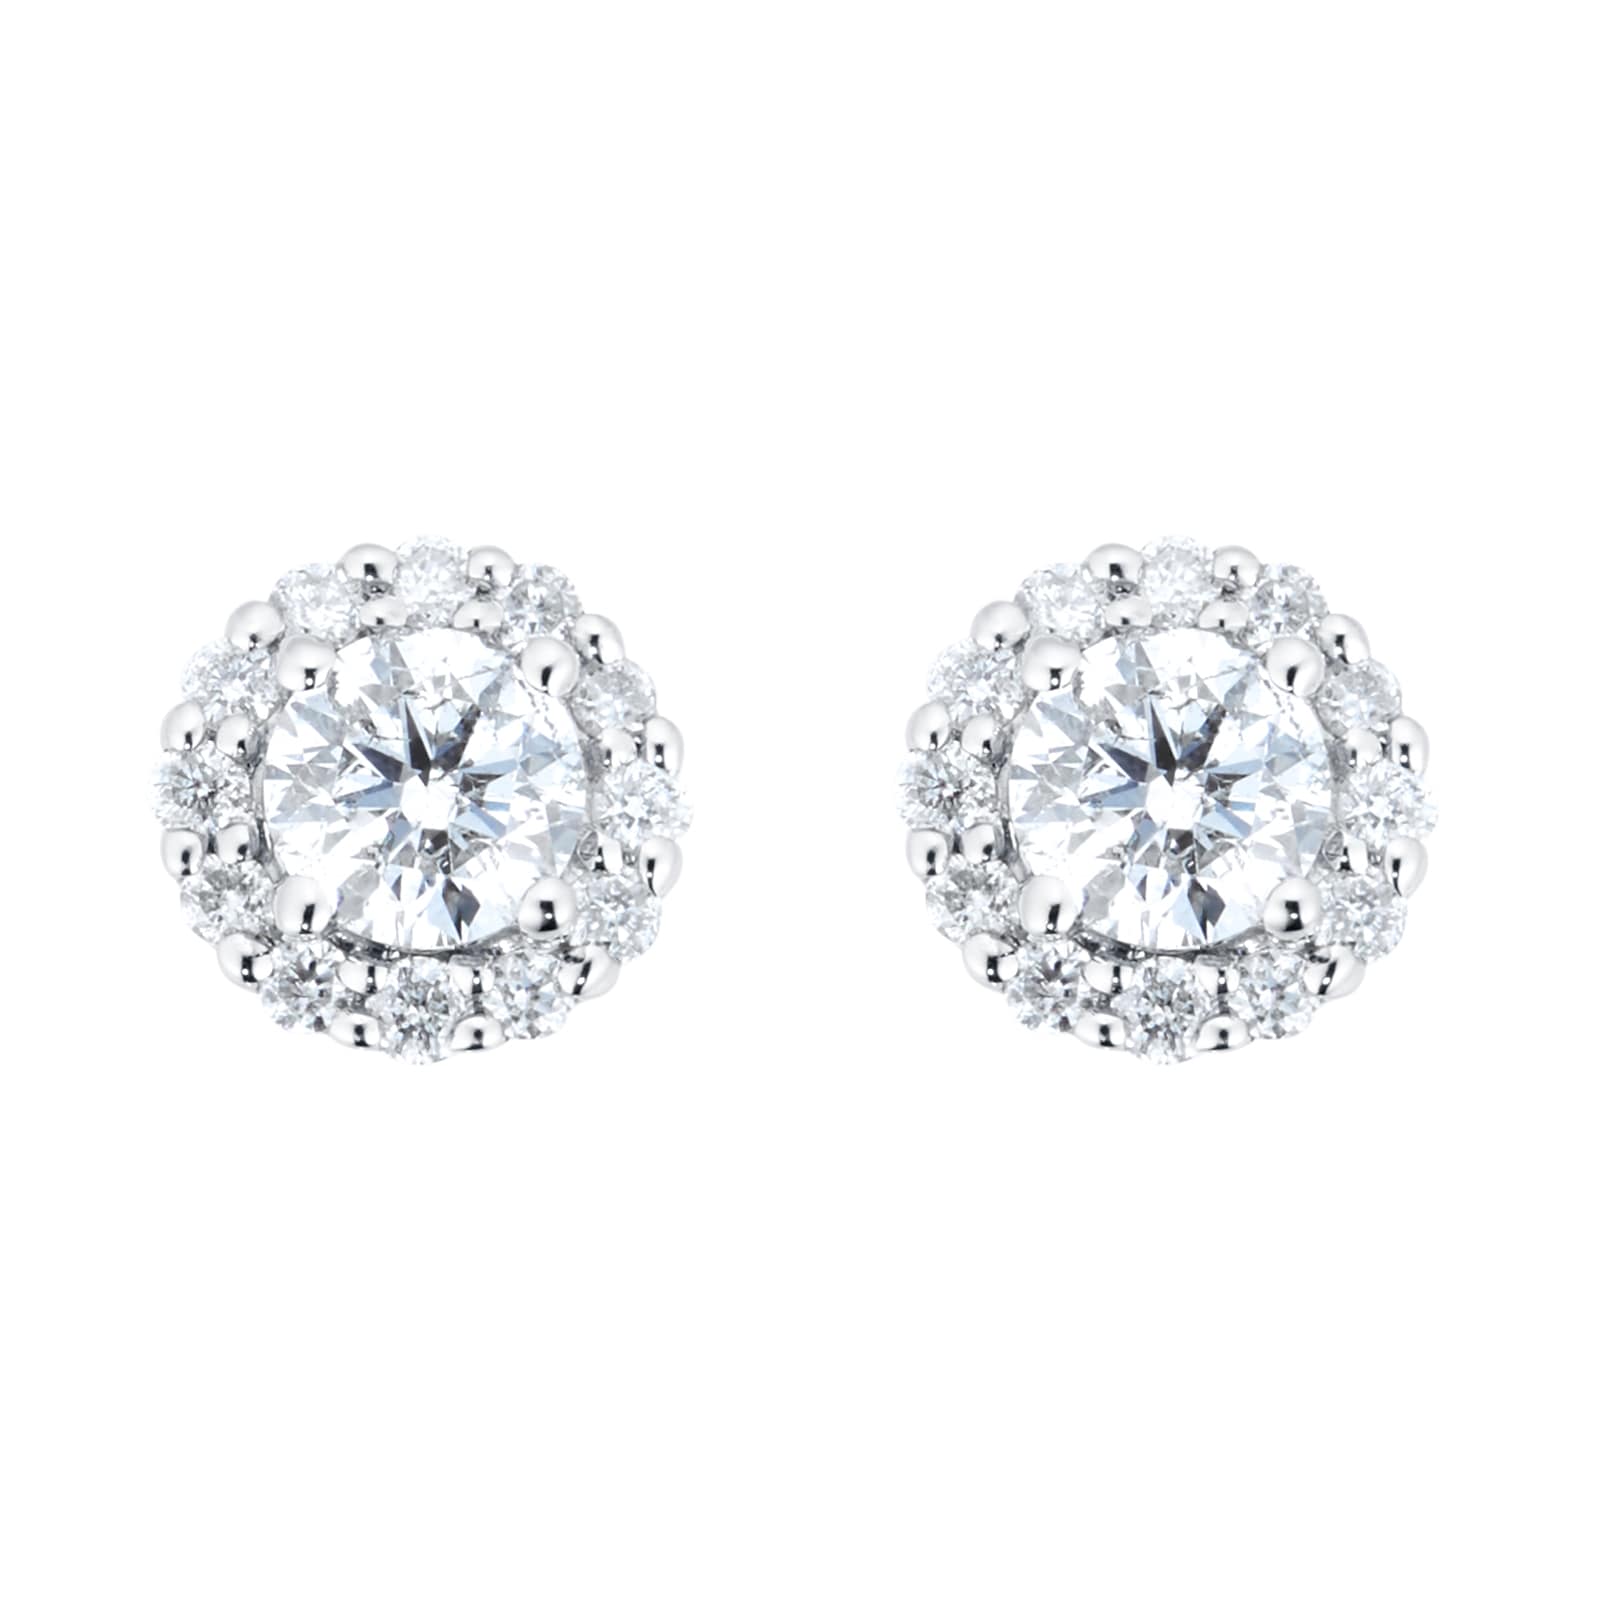 Buy Radley Sterling Silver Blue Stone Heart Stud Earrings | Womens earrings  | Argos